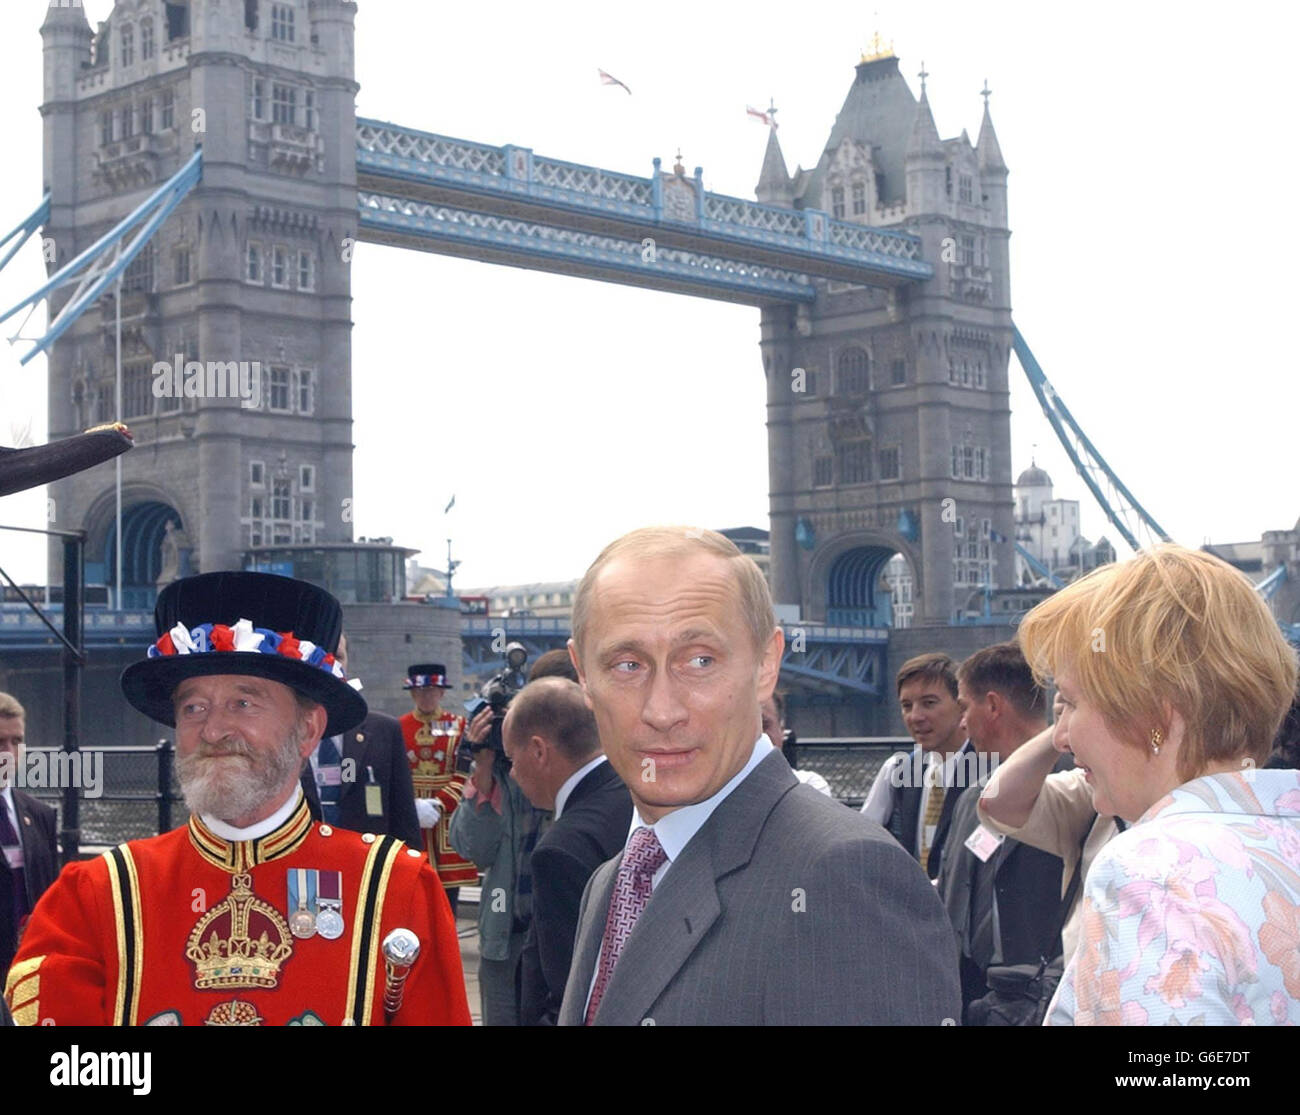 Ein Yeoman der Garde, Tom Sharp, (links) sieht, wie der russische Präsident Wladimir Putin und seine Frau Ljudmila bei ihrem Besuch im Tower of London vorbeikommen. * der russische Führer besichtigte die historische Attraktion mit seiner Frau, musste aber nicht anstehen, um die Exponate zu sehen. Stockfoto